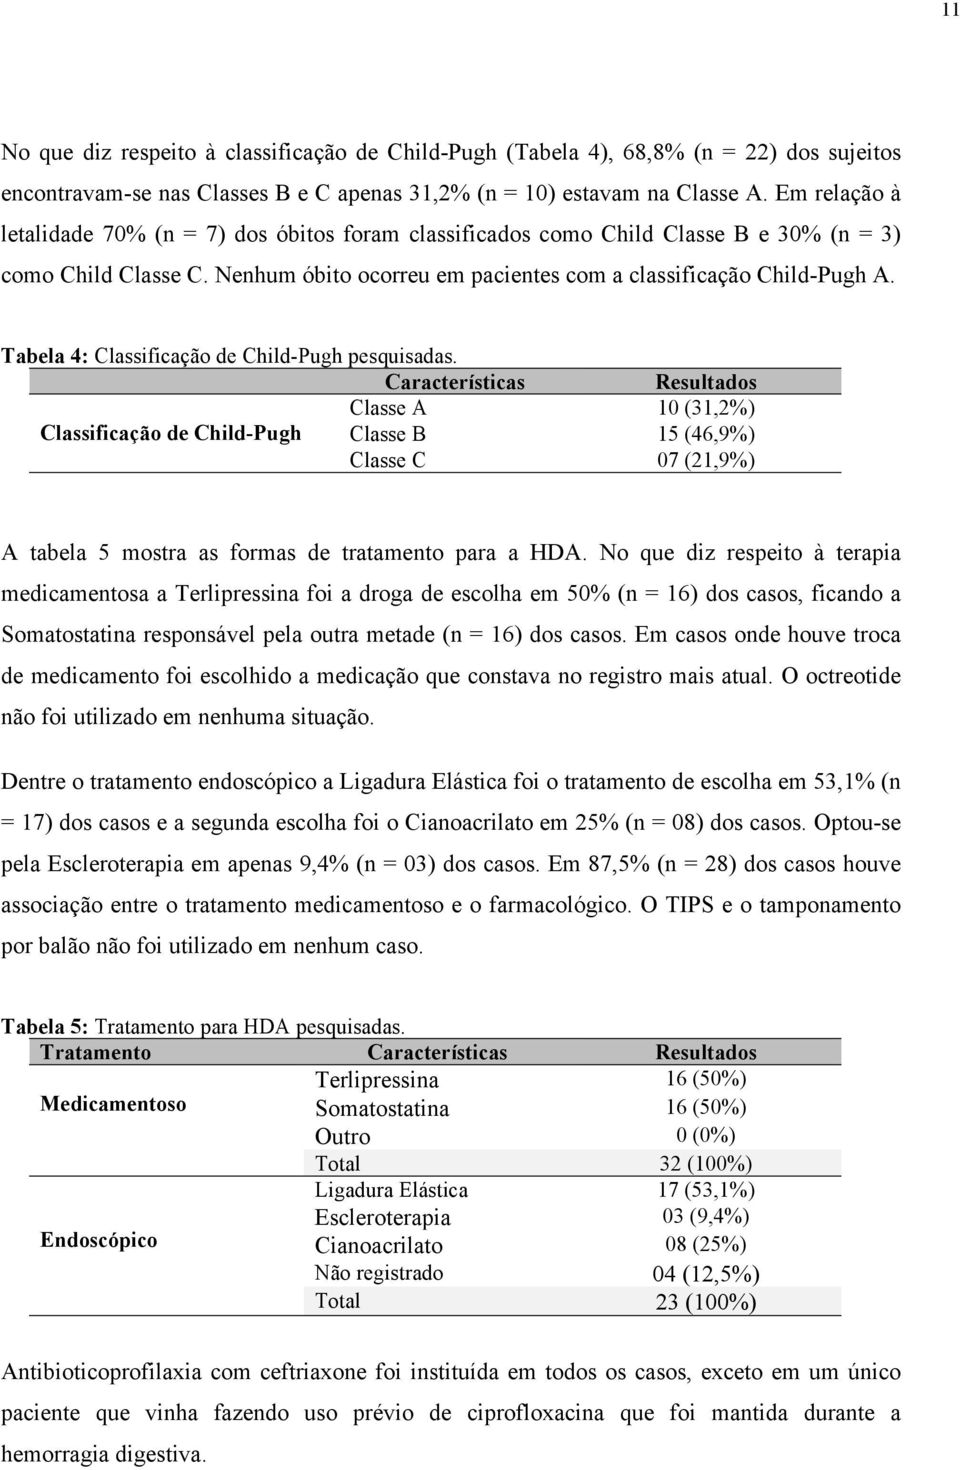 Tabela 4: Classificação de Child-Pugh pesquisadas.